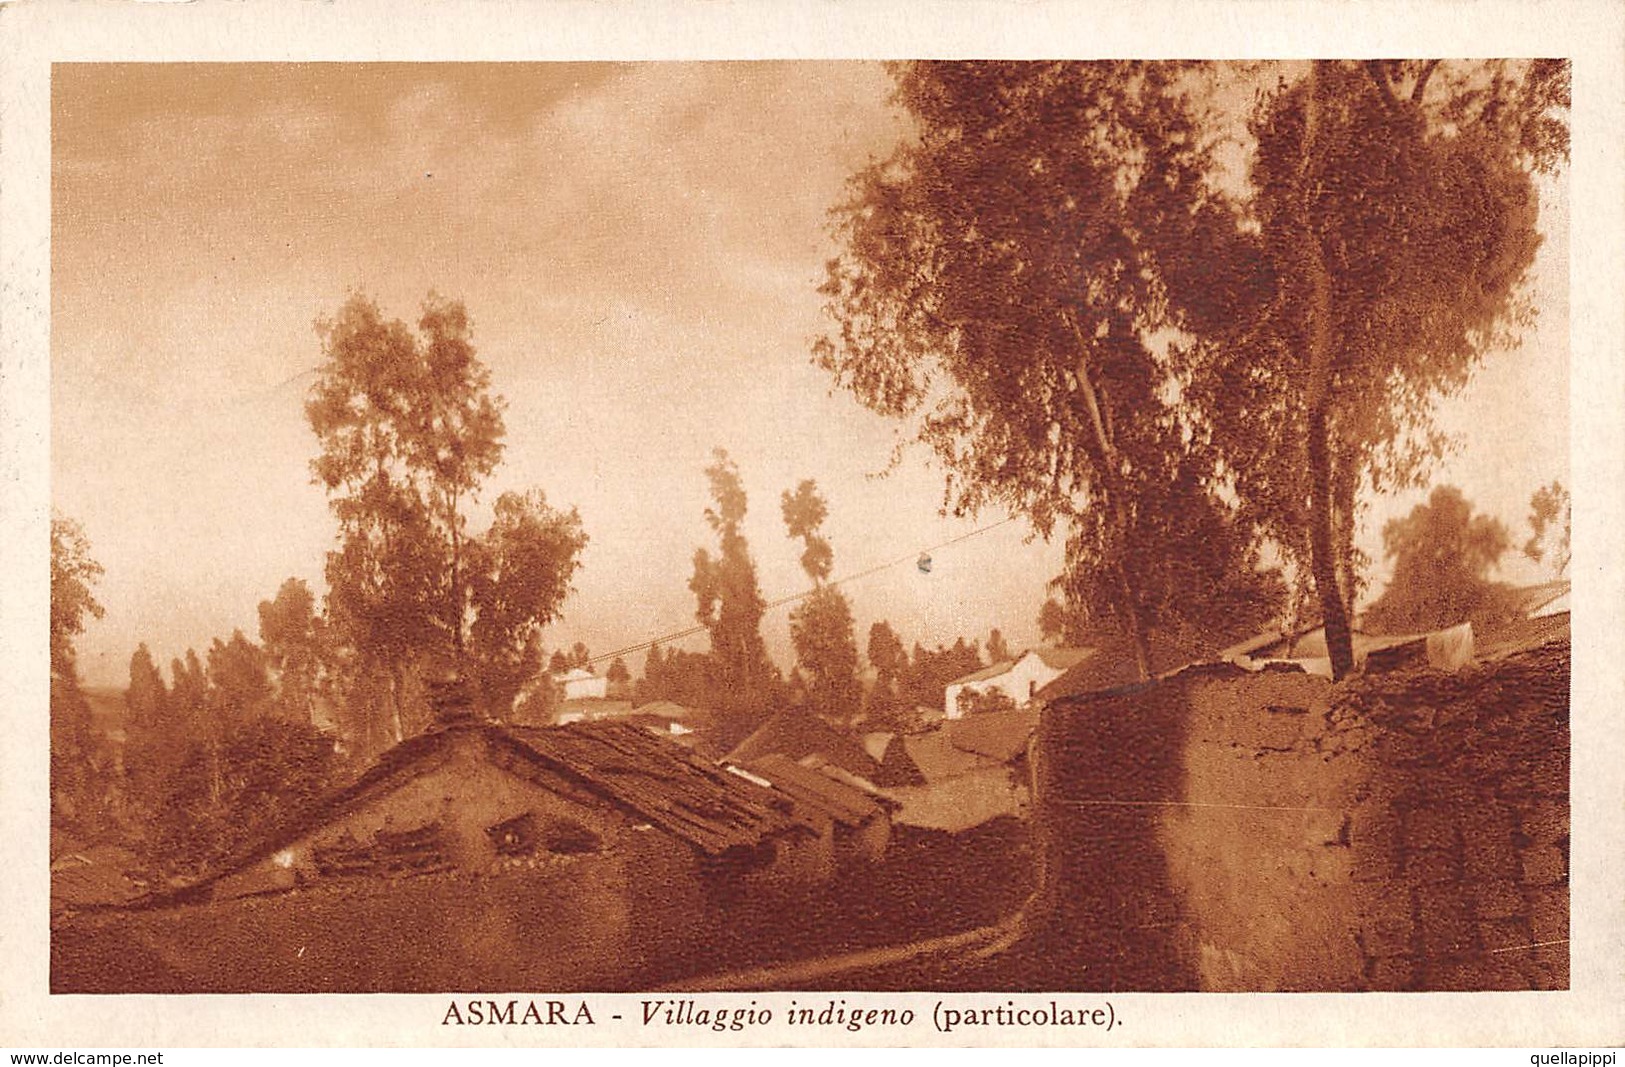 08759 "ERITREA - ASMARA - VILLAGGIO INDIGENO - PARTICOLARE"  FRANCOBOLLO 20 CENT ERITREA. CART  SPED 1938 - Erythrée